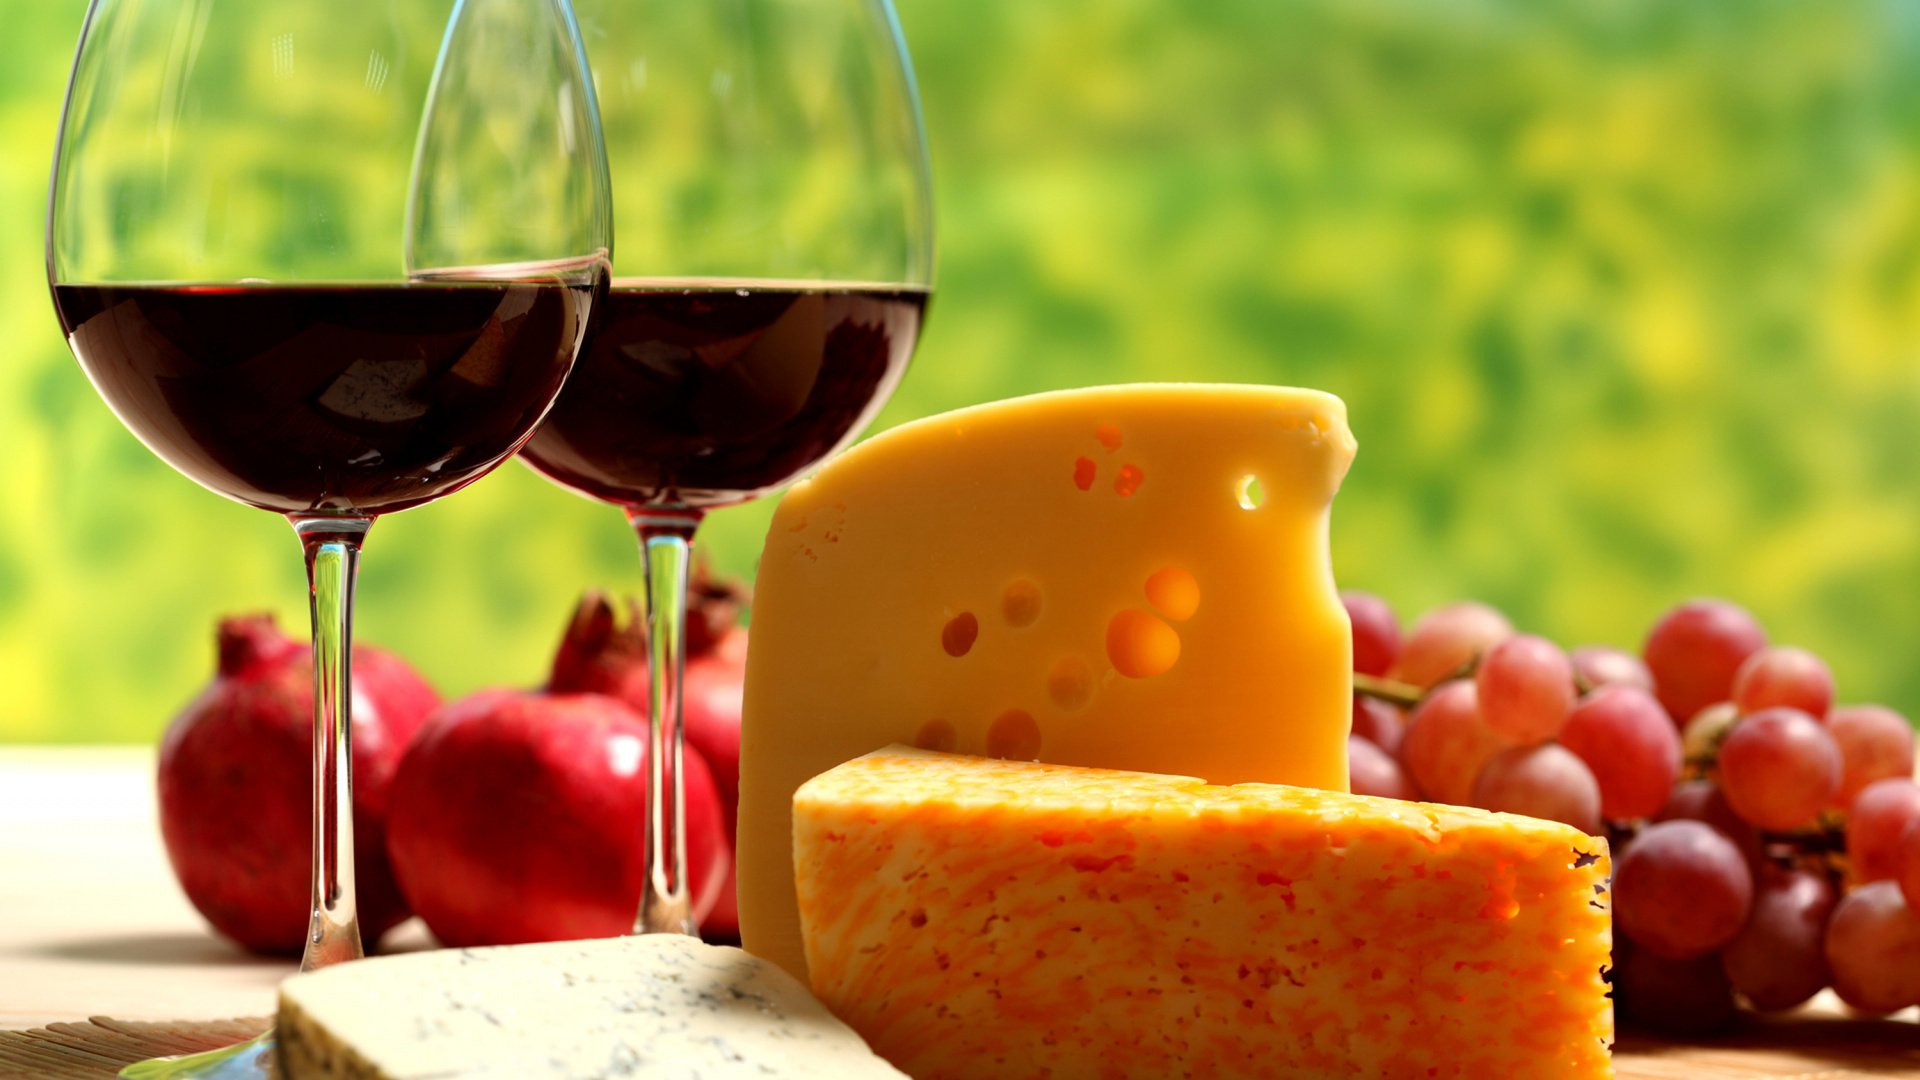 葡萄酒, 红葡萄酒, 奶酪, 葡萄酒杯, 食品 壁纸 1920x1080 允许